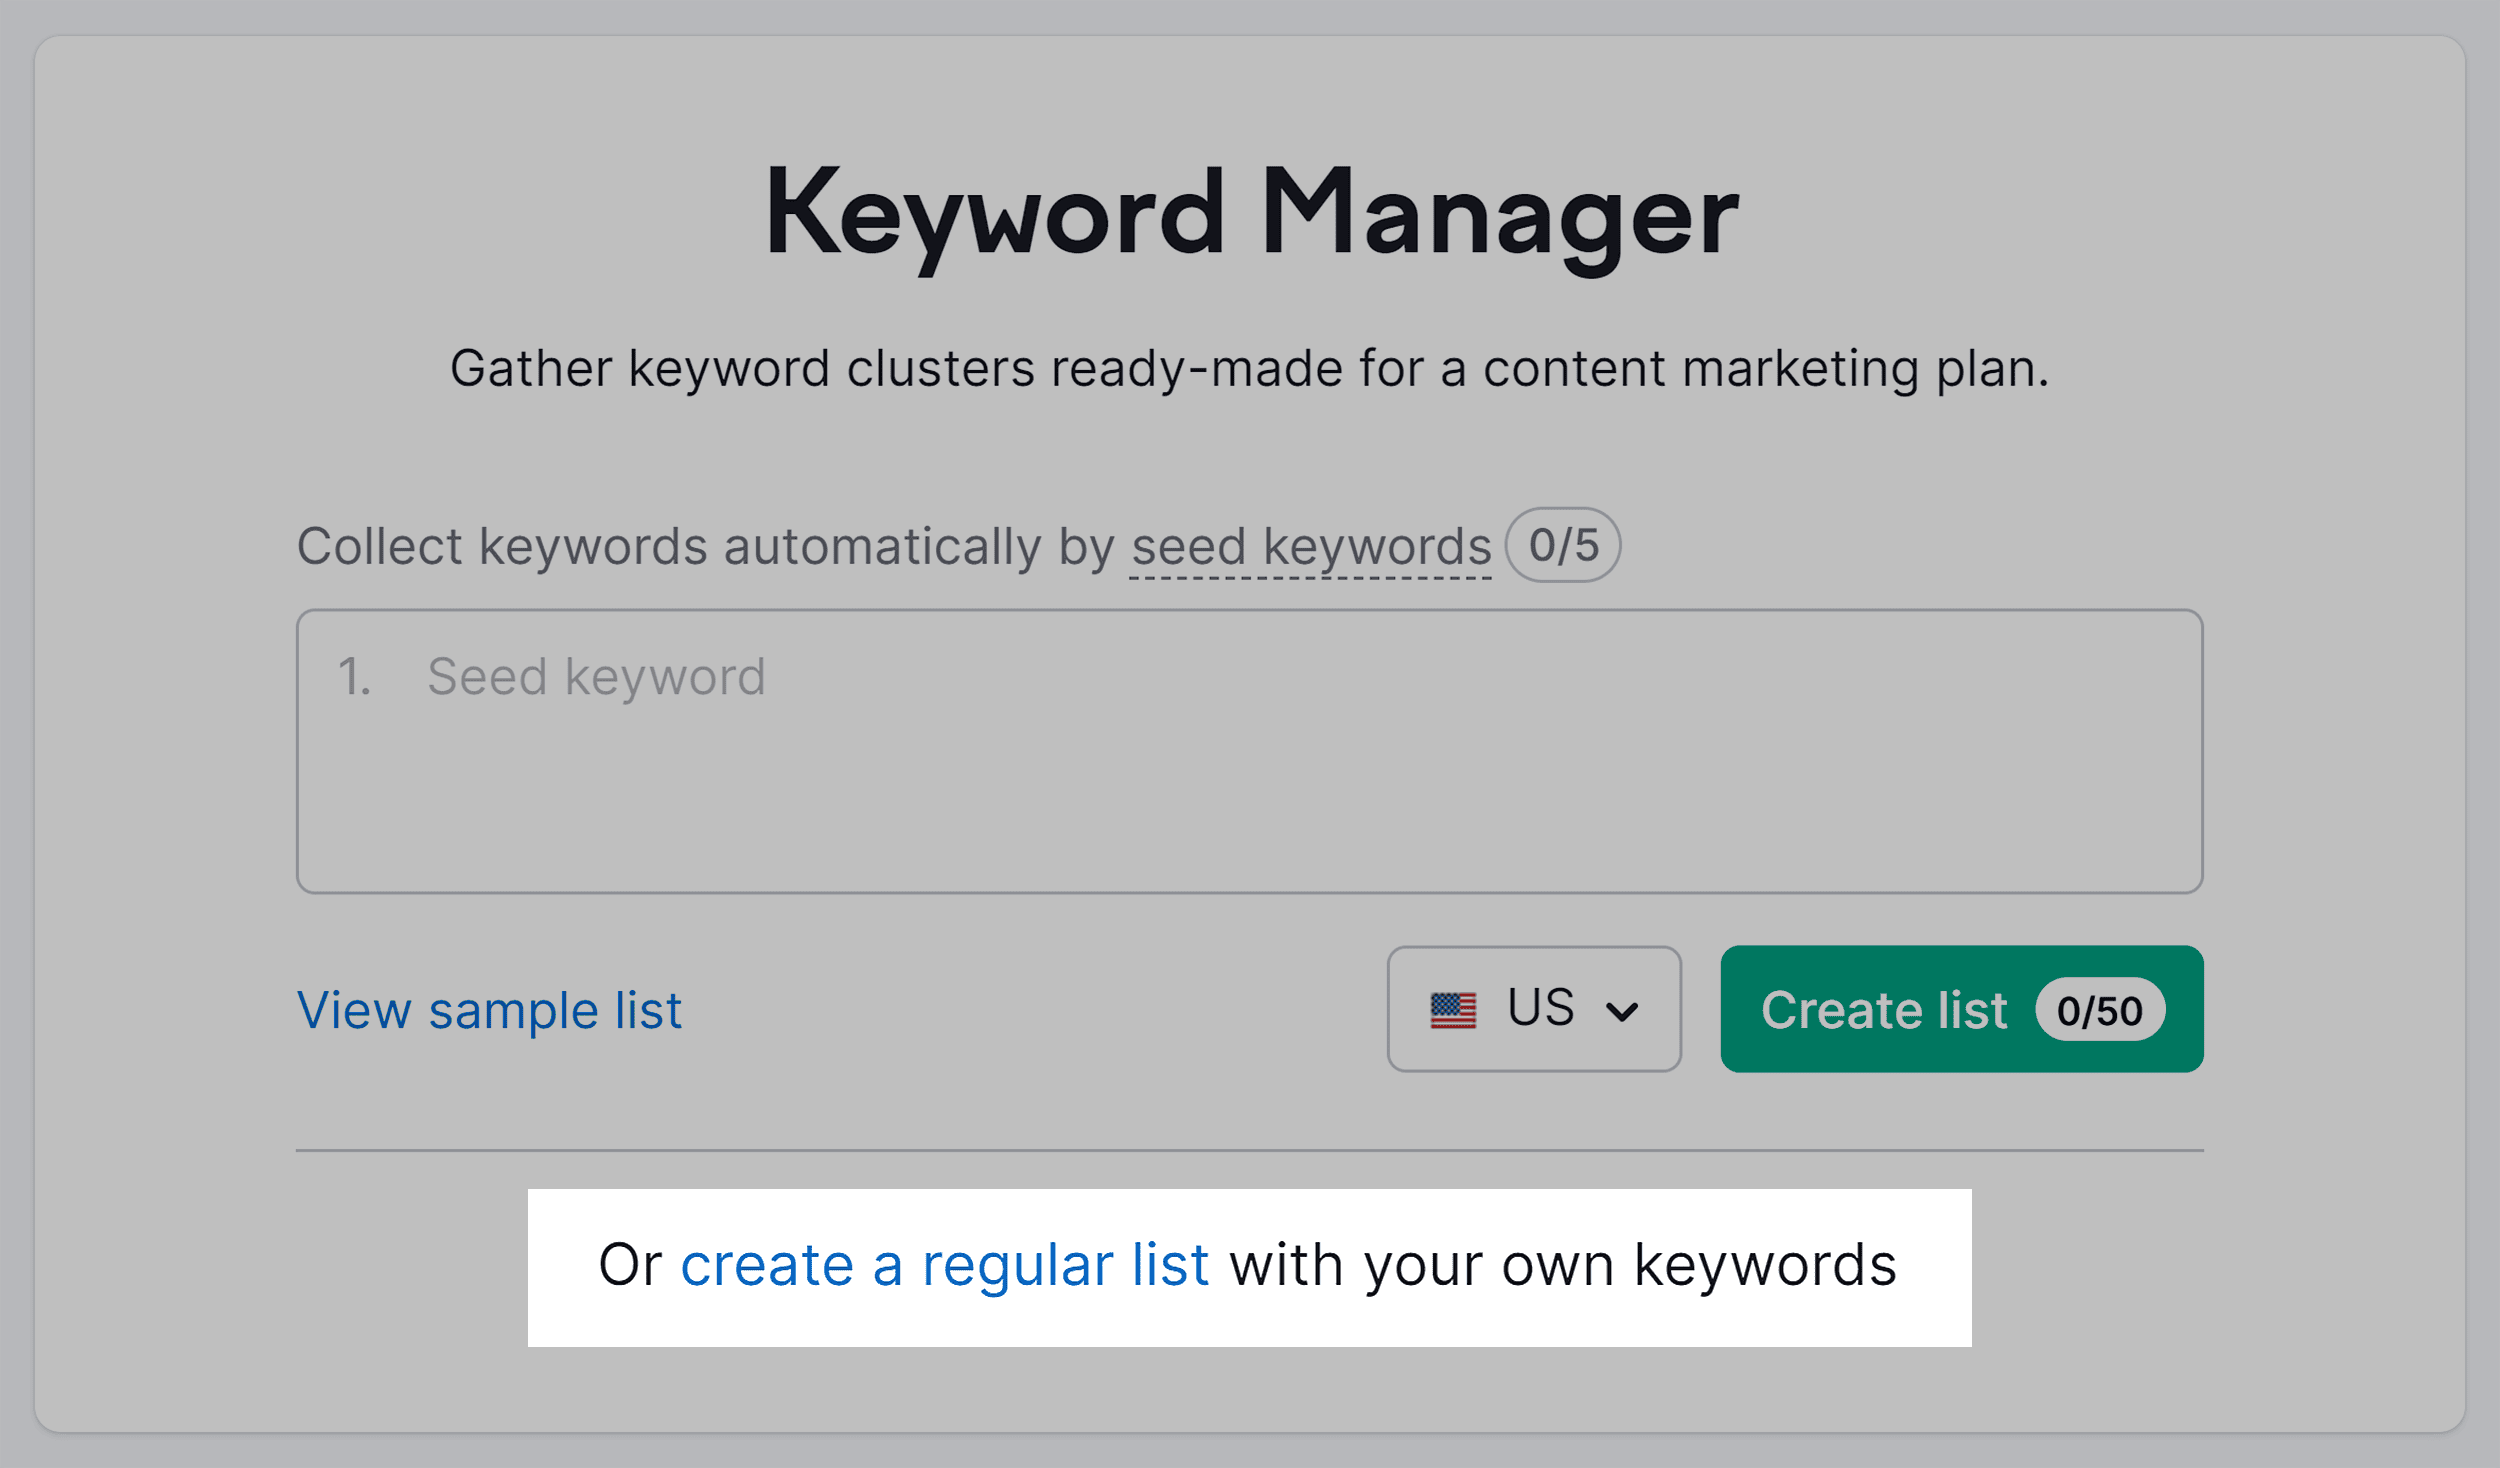 Keyword Manager – Create regular list